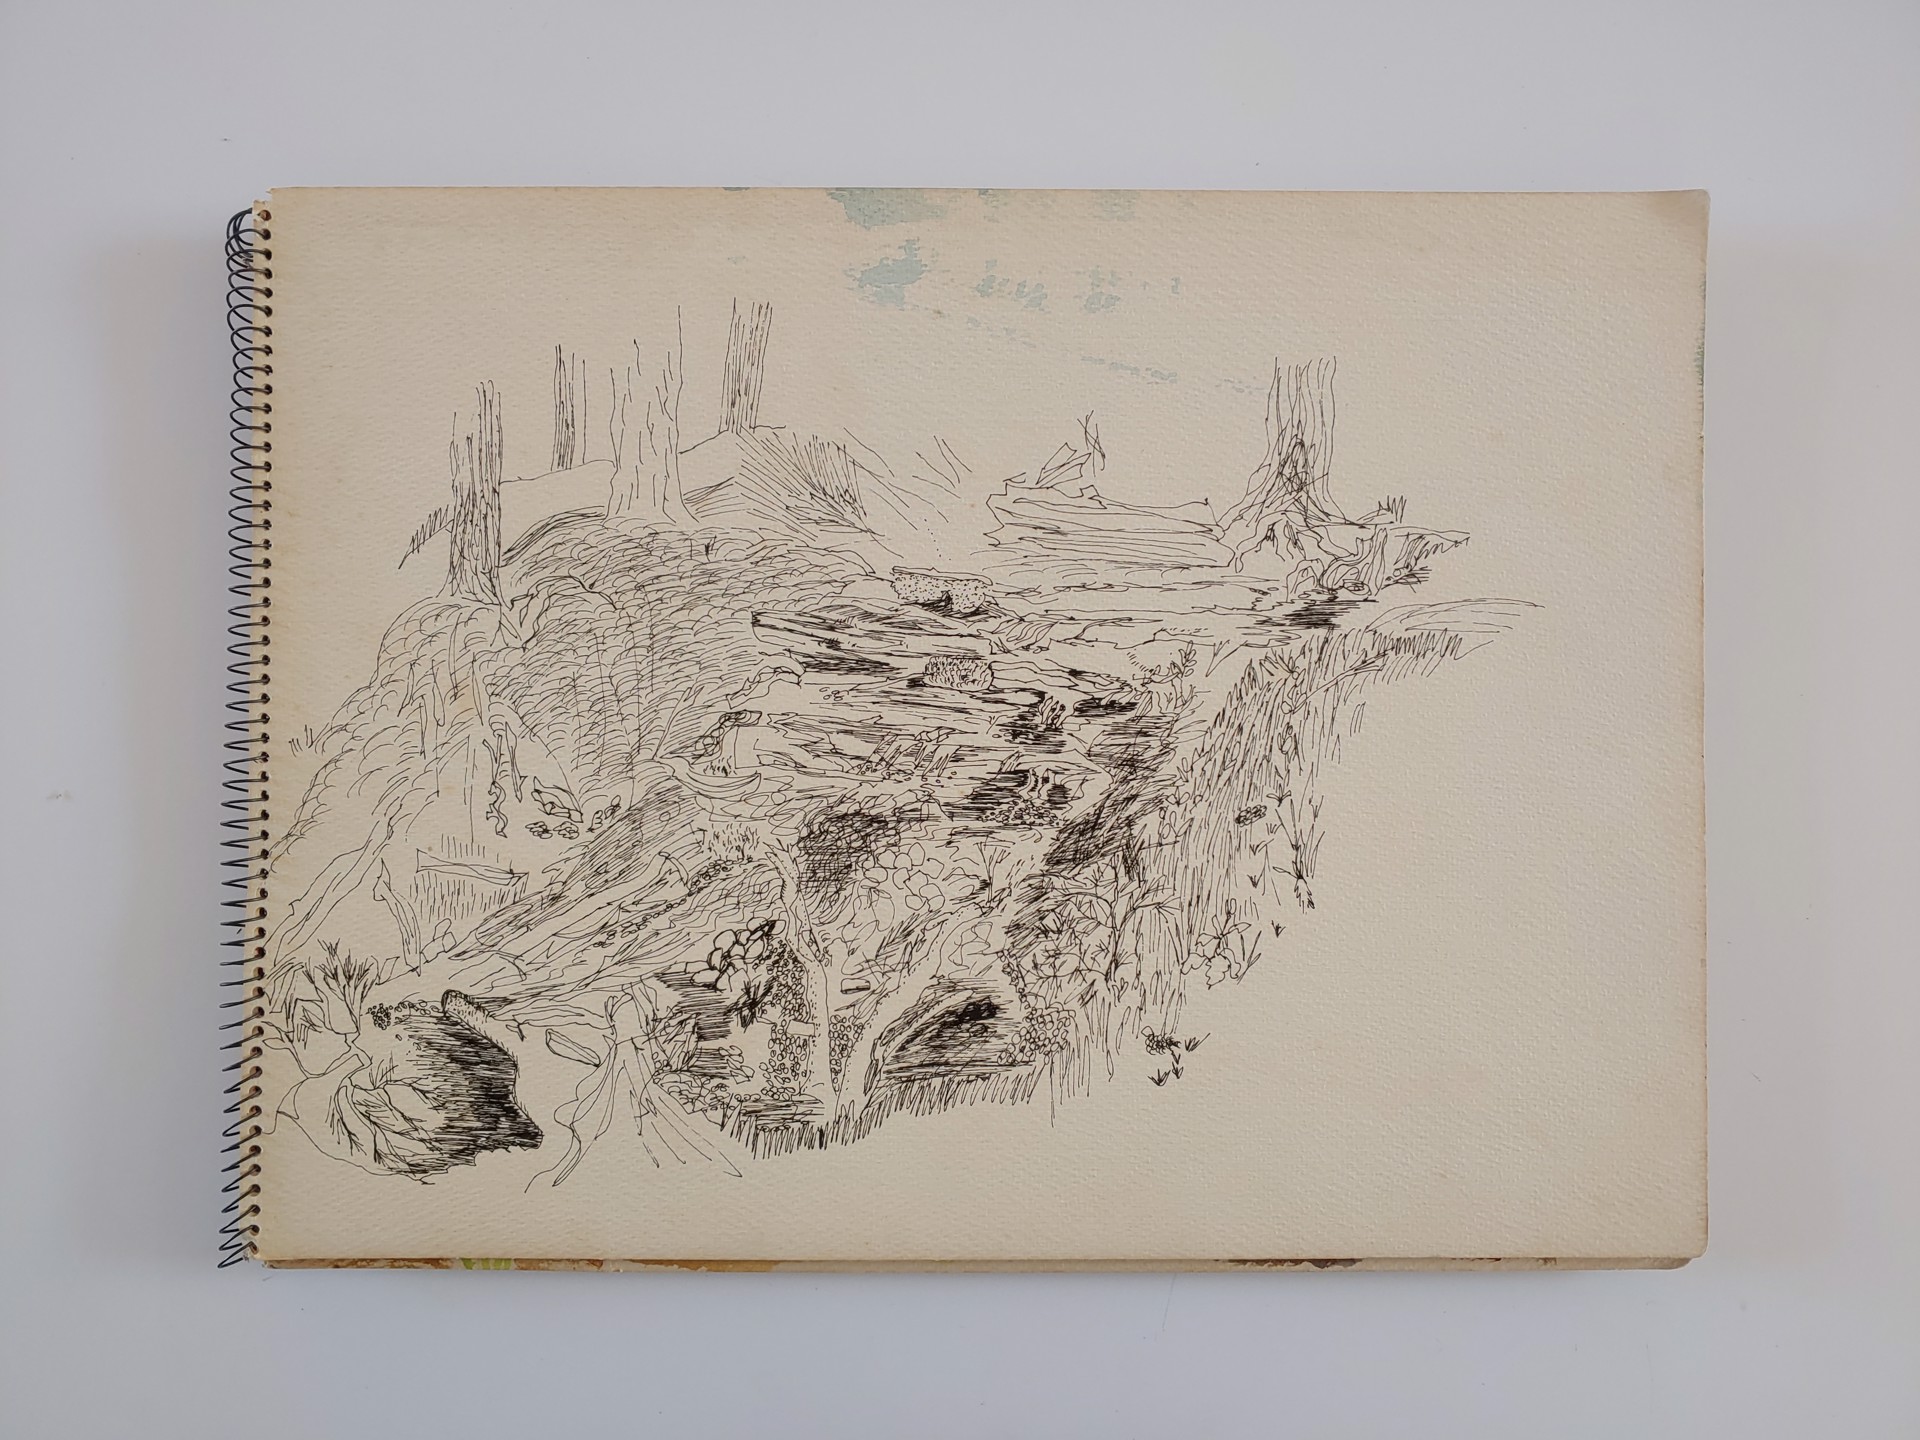 1973 Sketchbook by David Amdur